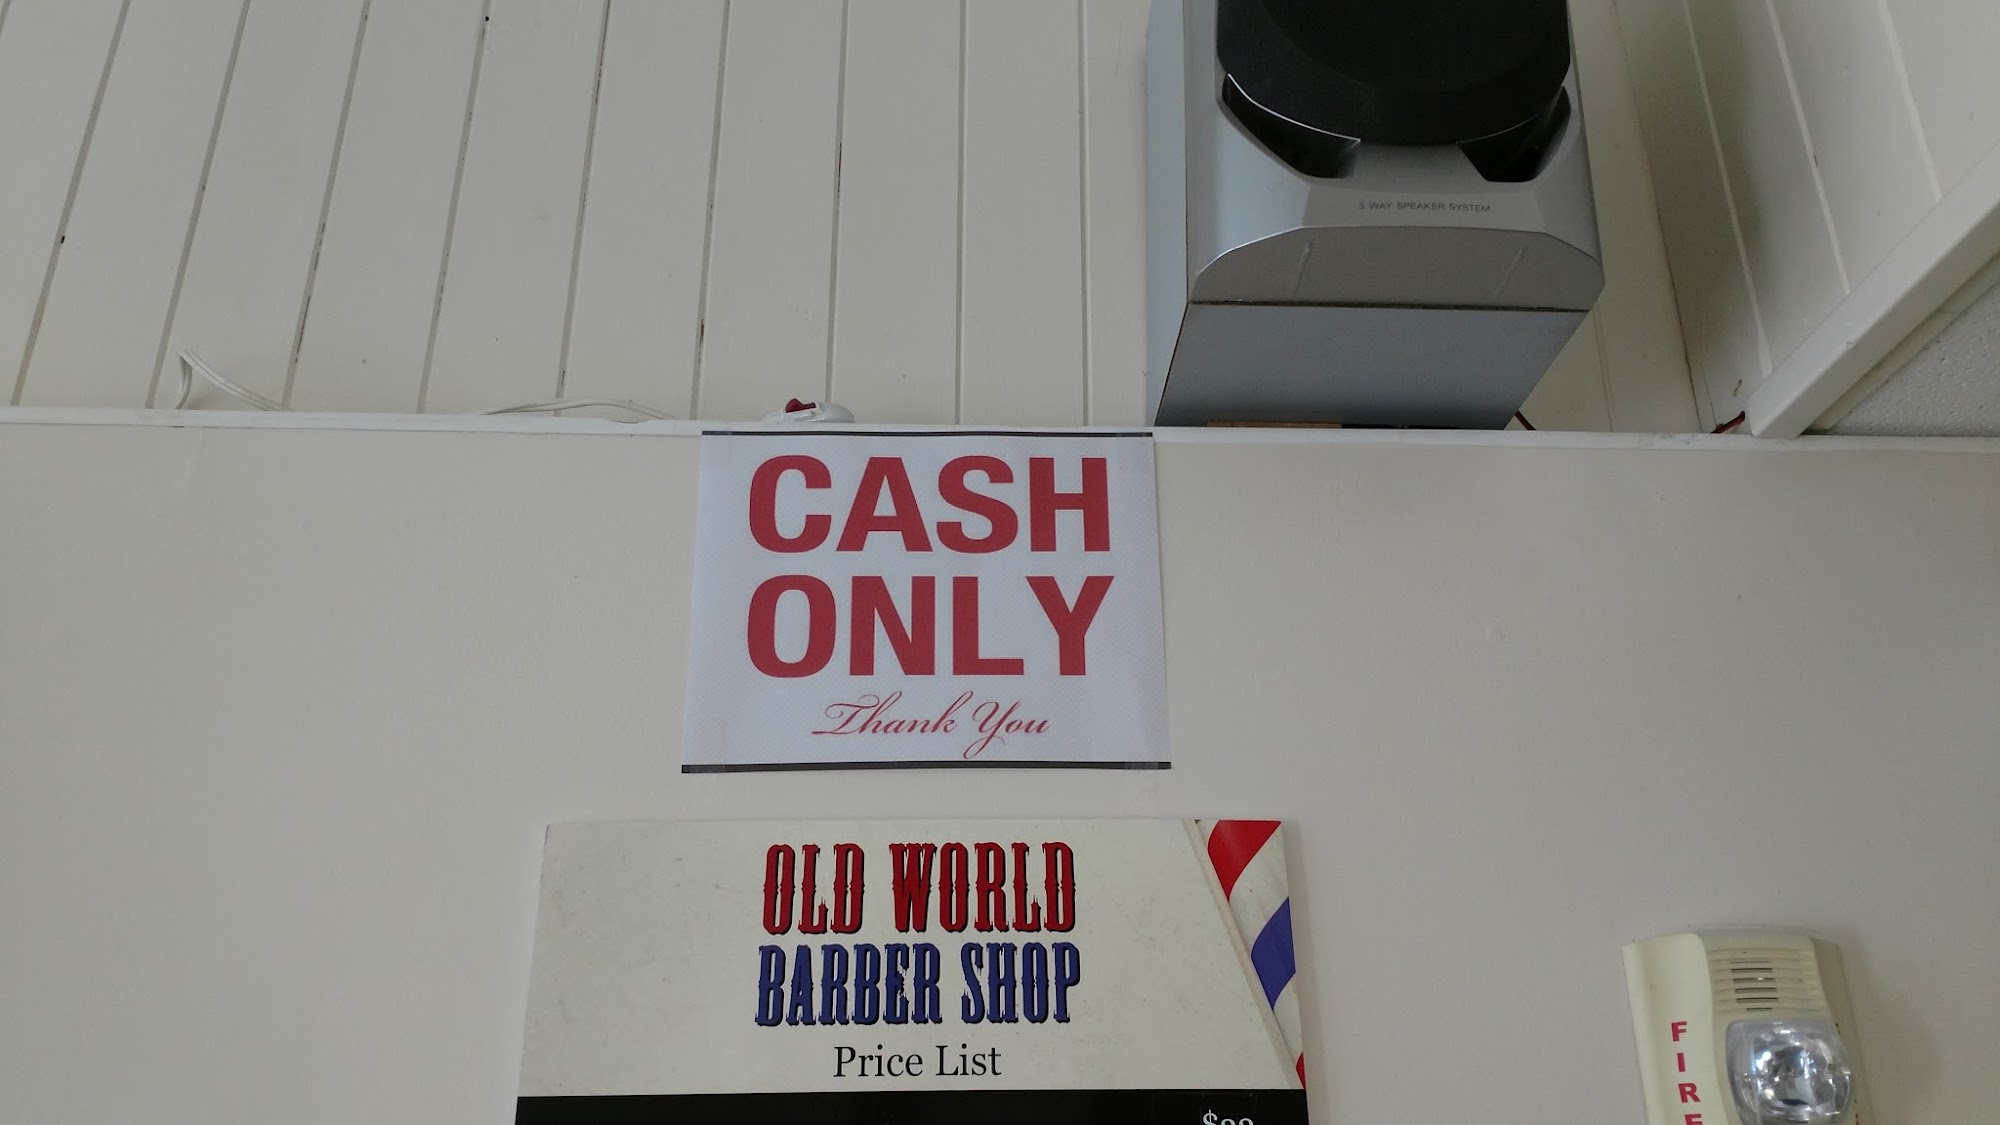 Old World Barber Shop 4 Cleveland St, Valhalla New York 10595